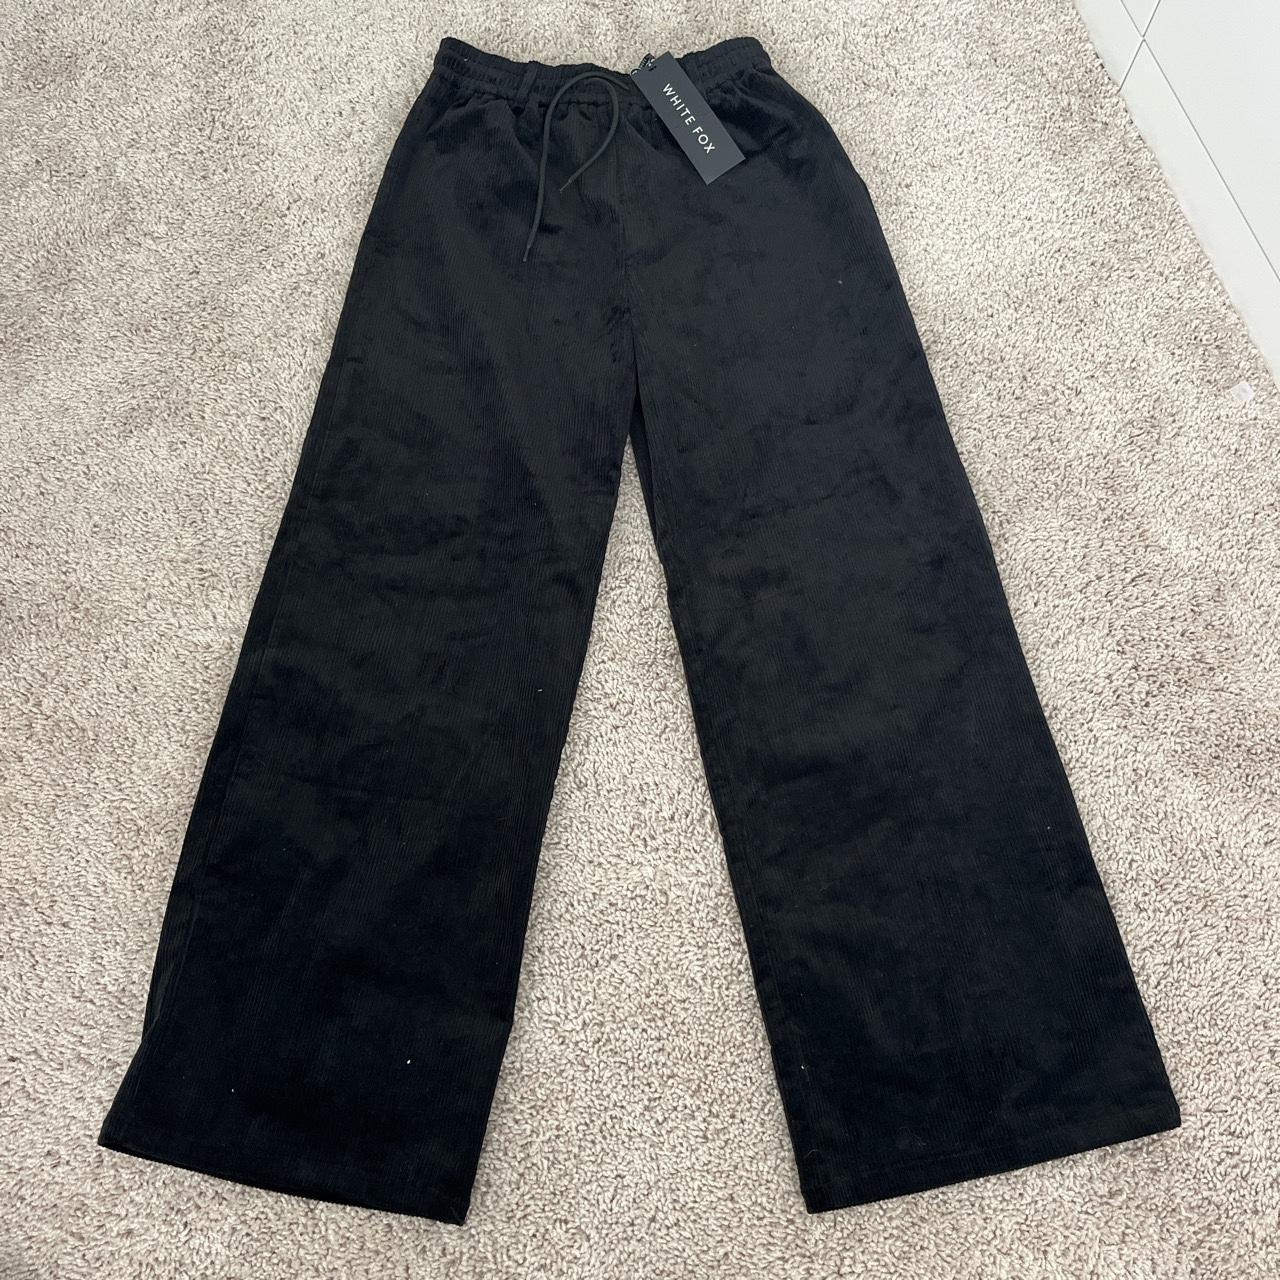 WHITEFOX black velvet pants brand new- can be... - Depop